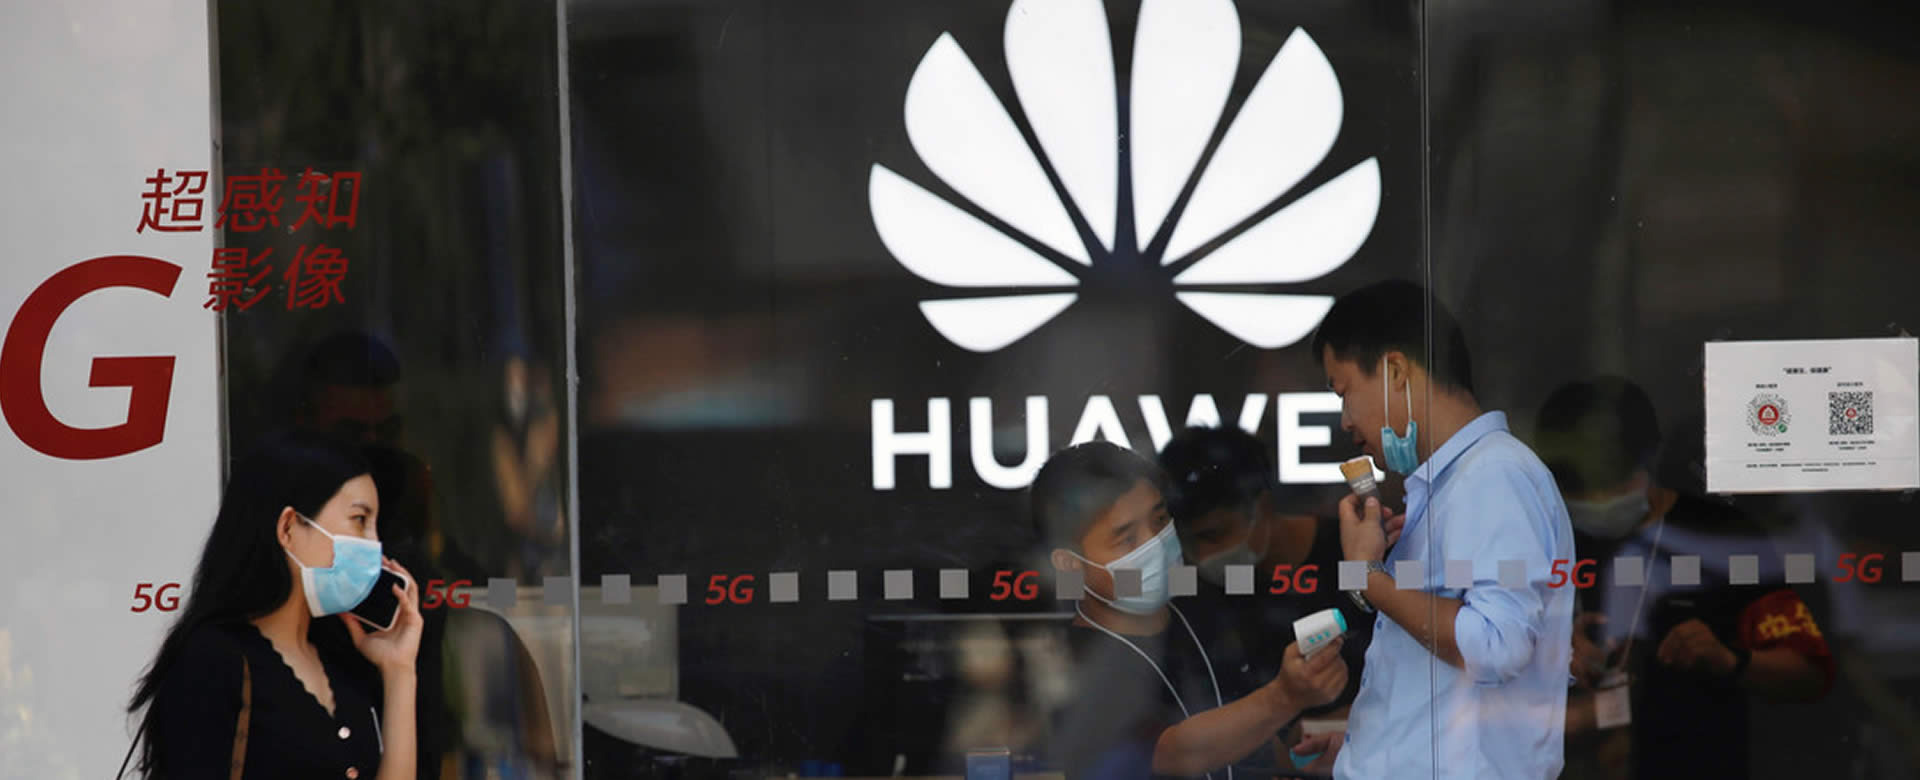 Huawei sube a la cima como el mayor proveedor mundial de smartphones